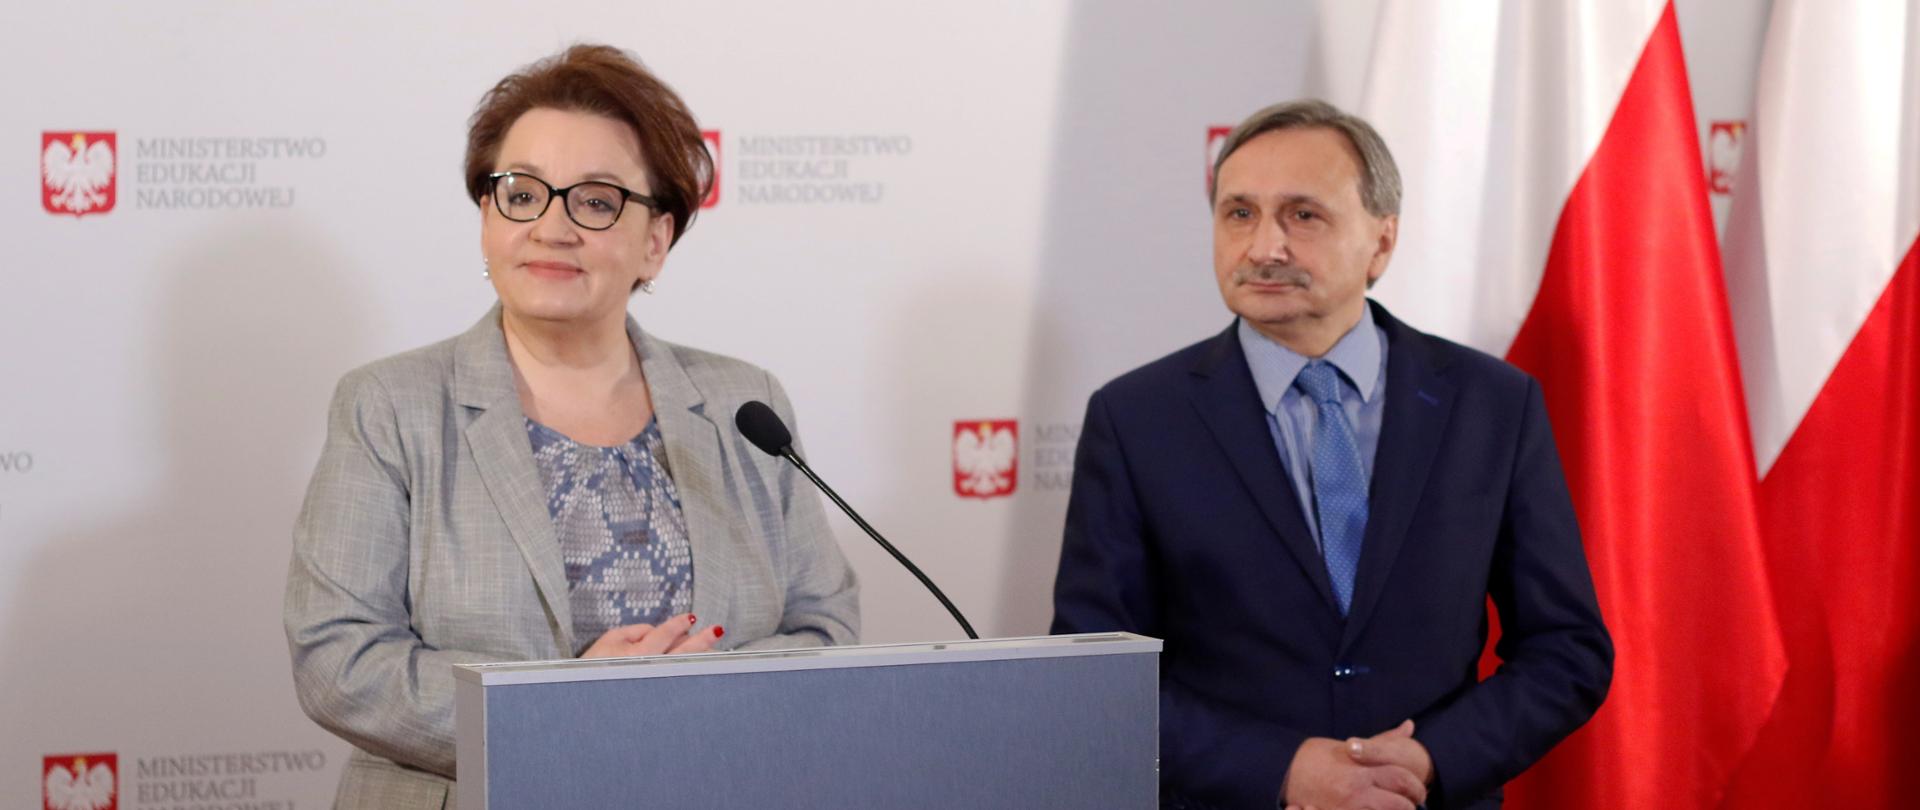 Konferencja prasowa Minister Edukacji Narodowej Anny Zalewskiej oraz wiceministra edukacji Macieja Kopcia. 